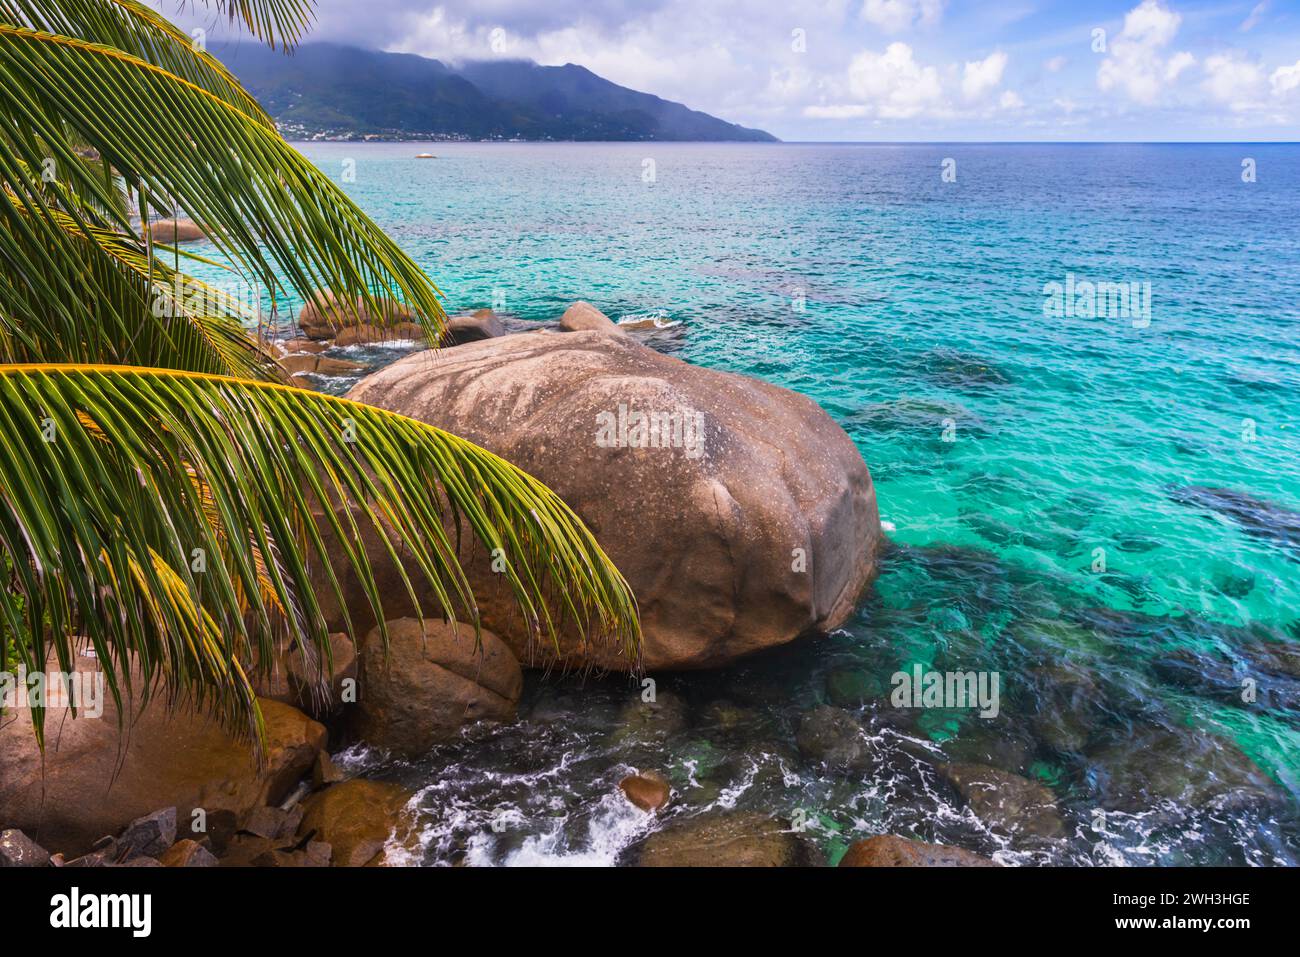 Paesaggio costiero con palme, rocce e acqua blu dell'oceano in un giorno d'estate. Spiaggia di Vista do Mar, isola di Mahe, Seychelles. Foto Stock